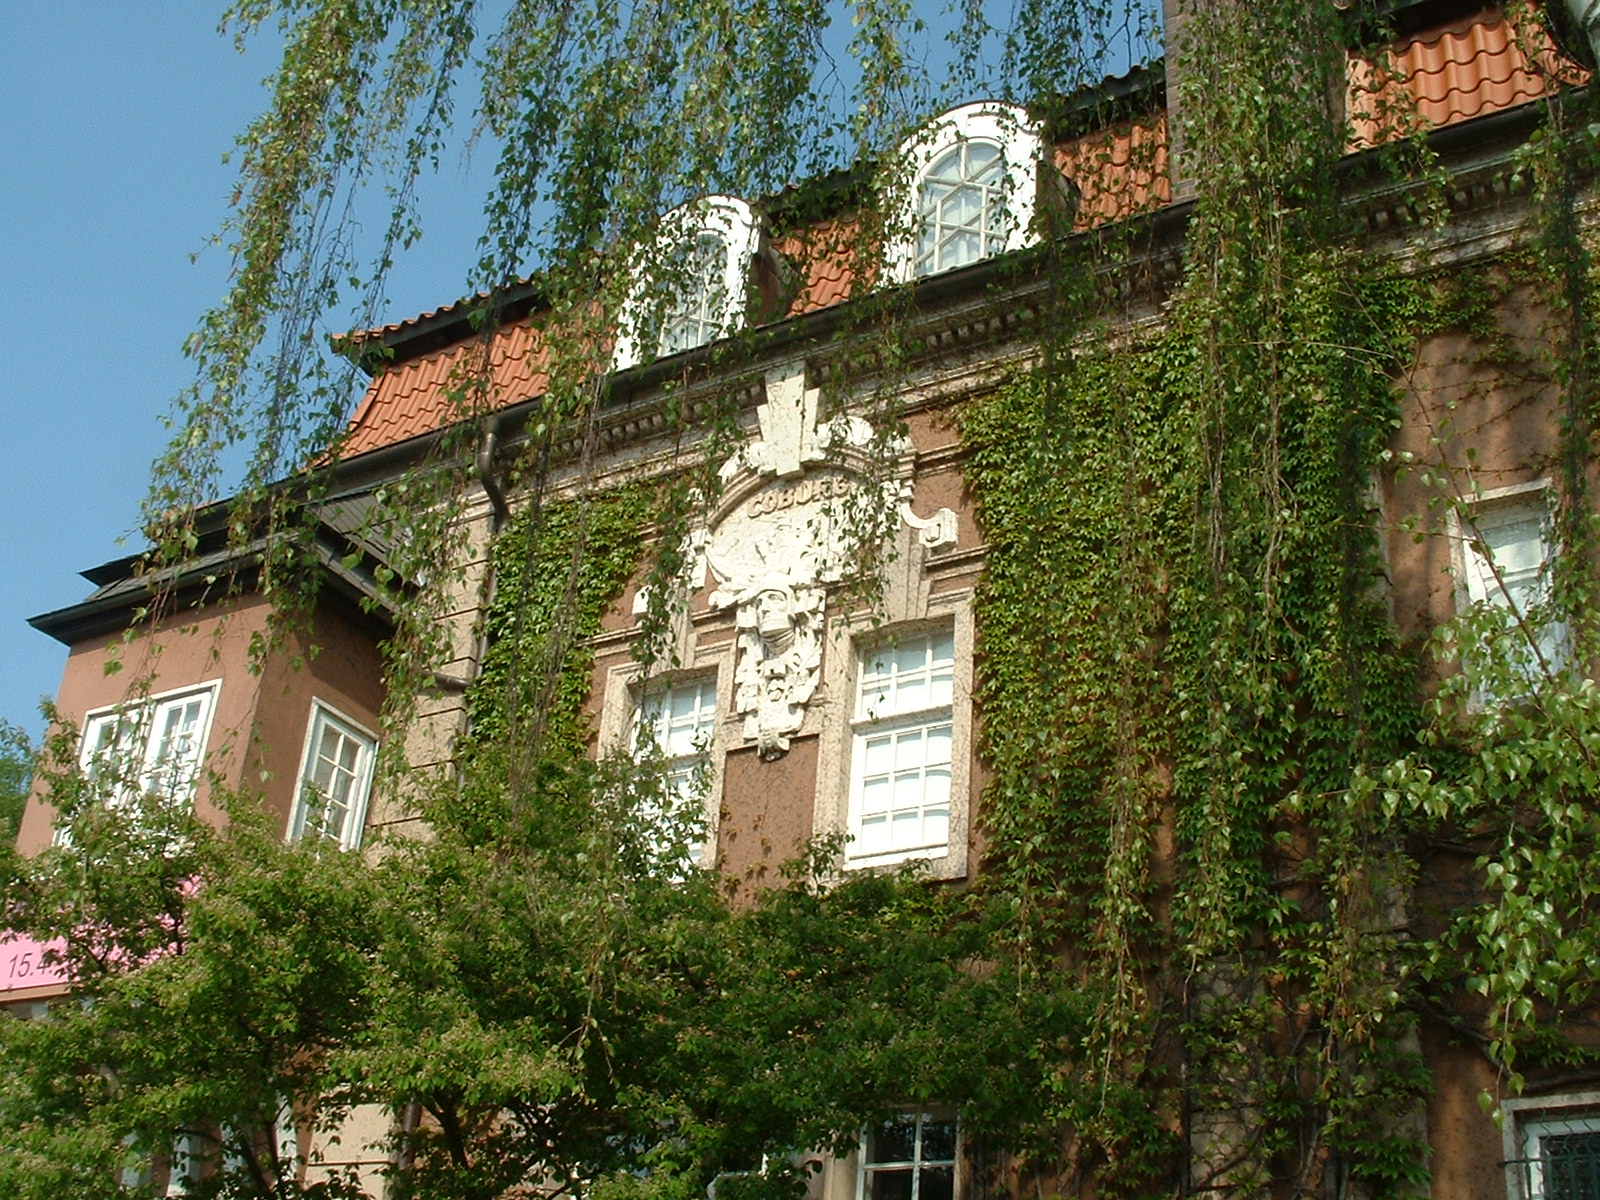 Städtische Galerie Delmenhorst Haus Coburg - Hübsche Hausfront von 1906